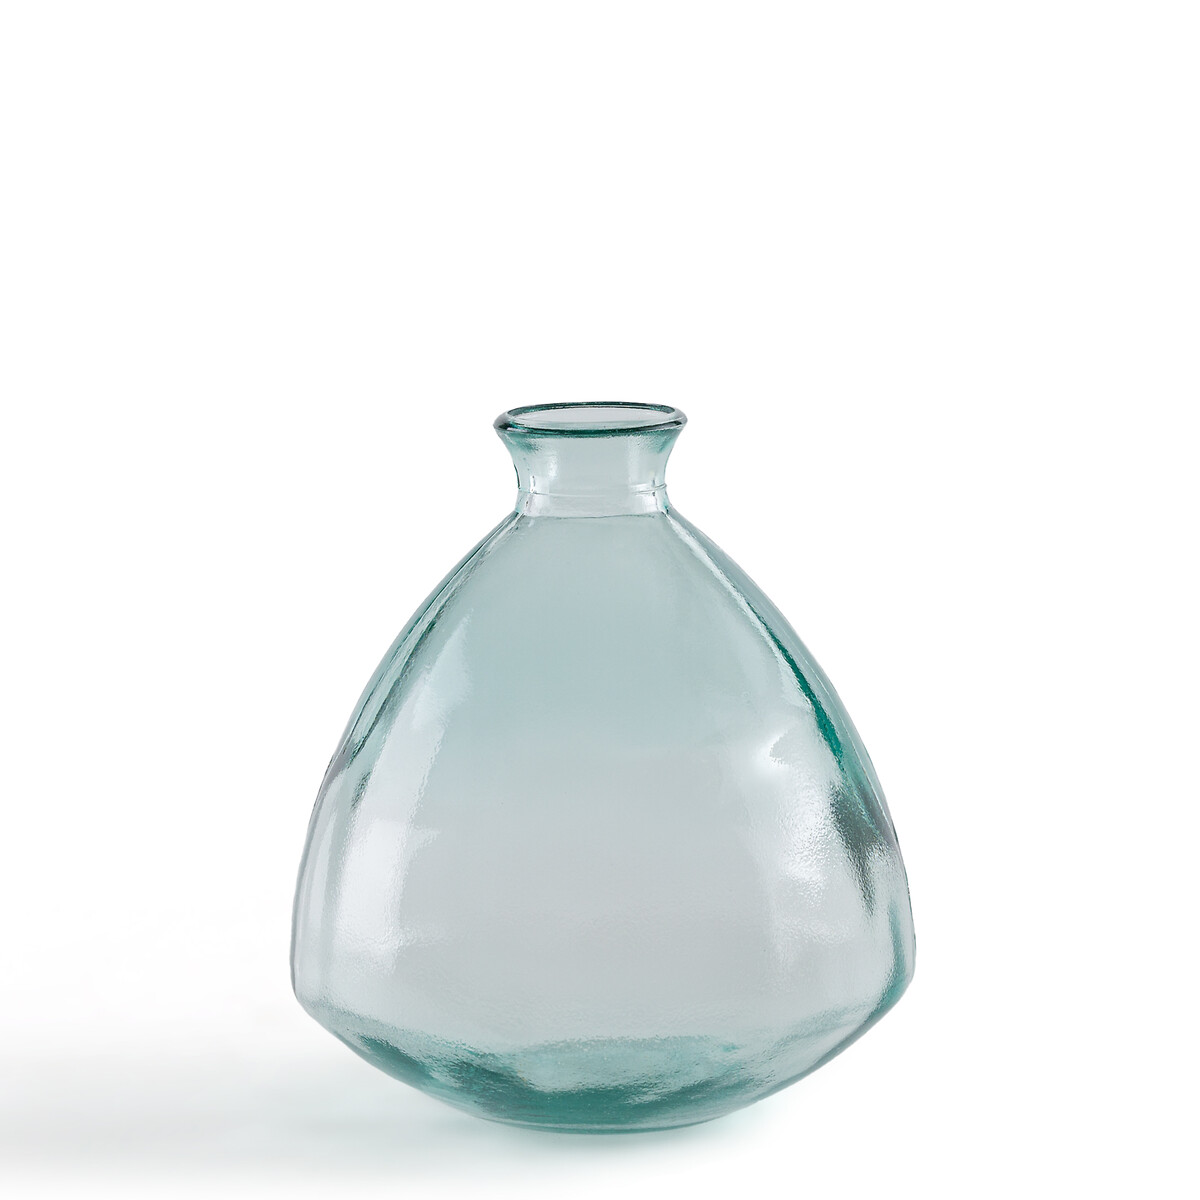 ваза из стекла в25 см arkenvia единый размер зеленый Ваза из стекла В19 см Izolia единый размер зеленый